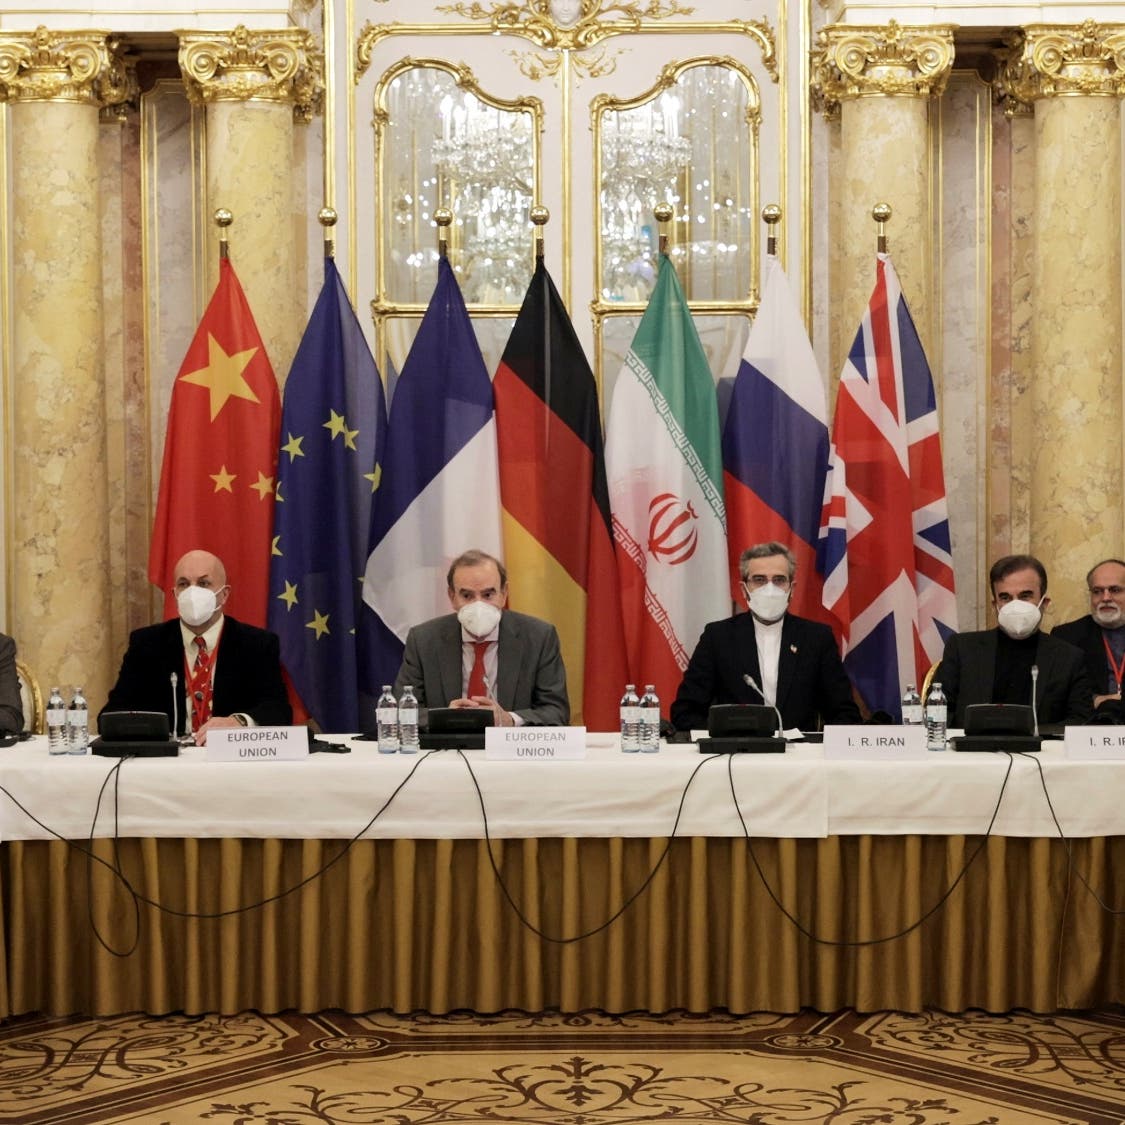 مبعوثة بريطانيا لمحادثات إيران النووية: نحن قريبون من اتفاق